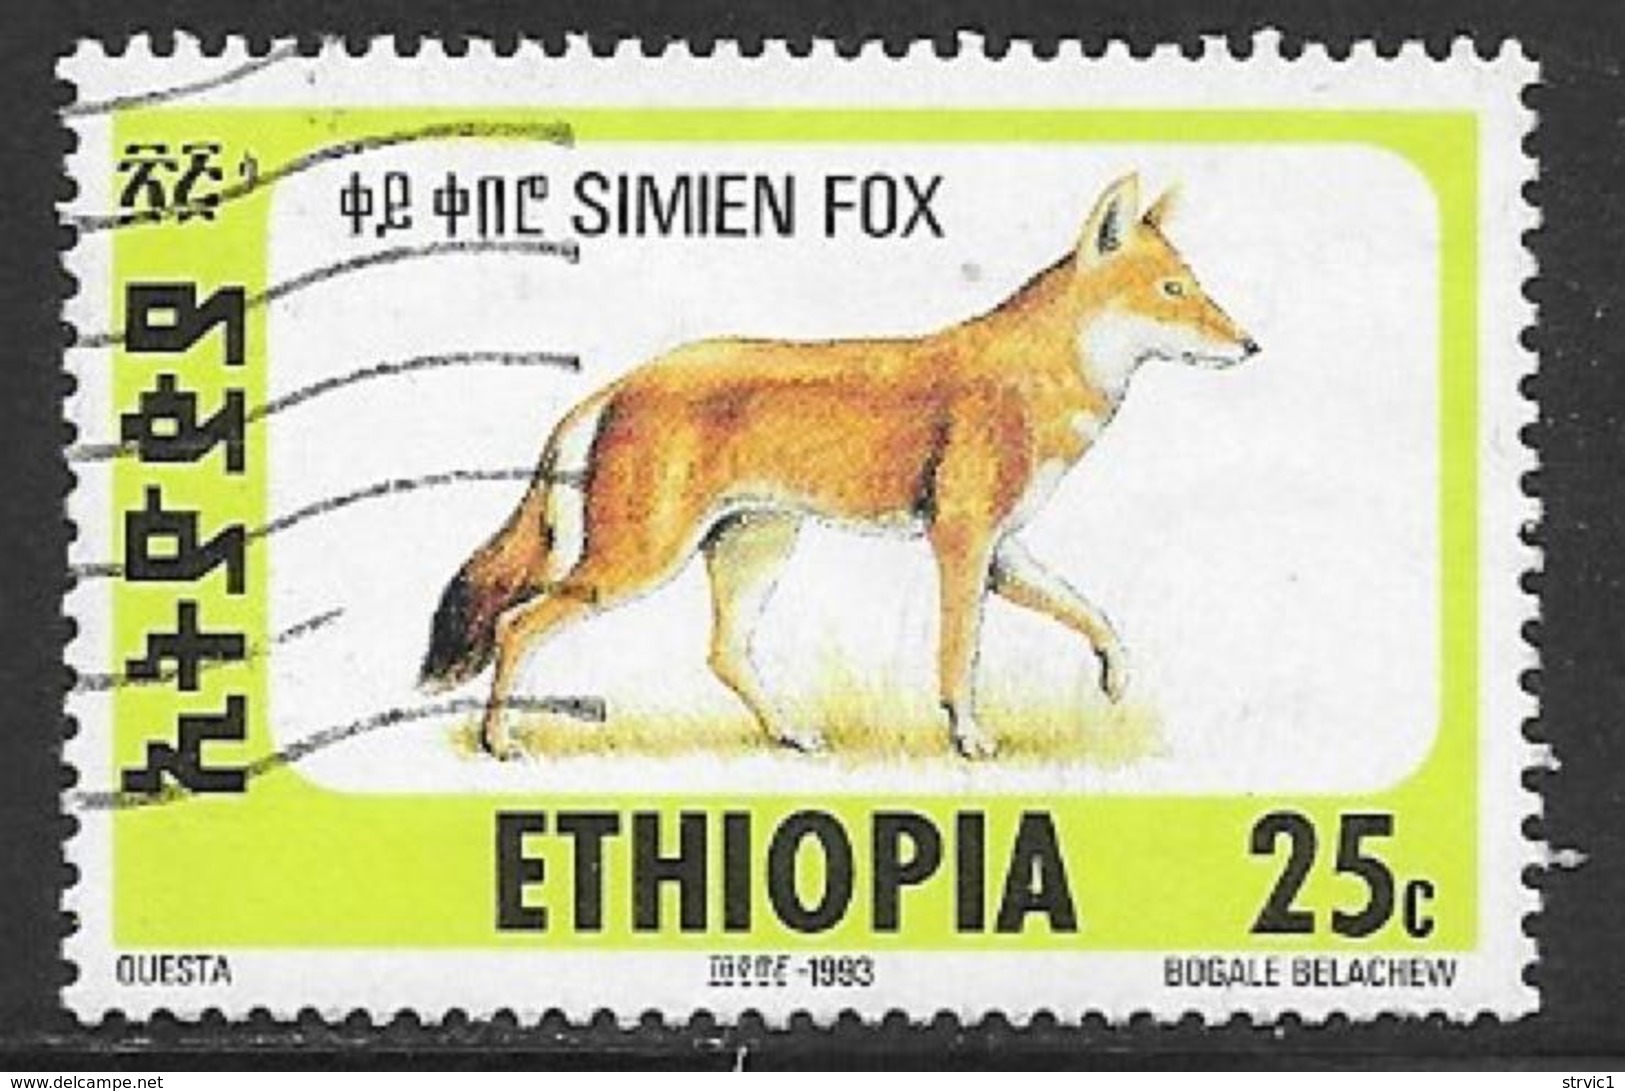 Ethiopia Scott # 1393E Used Simien Fox, 1994 - Äthiopien